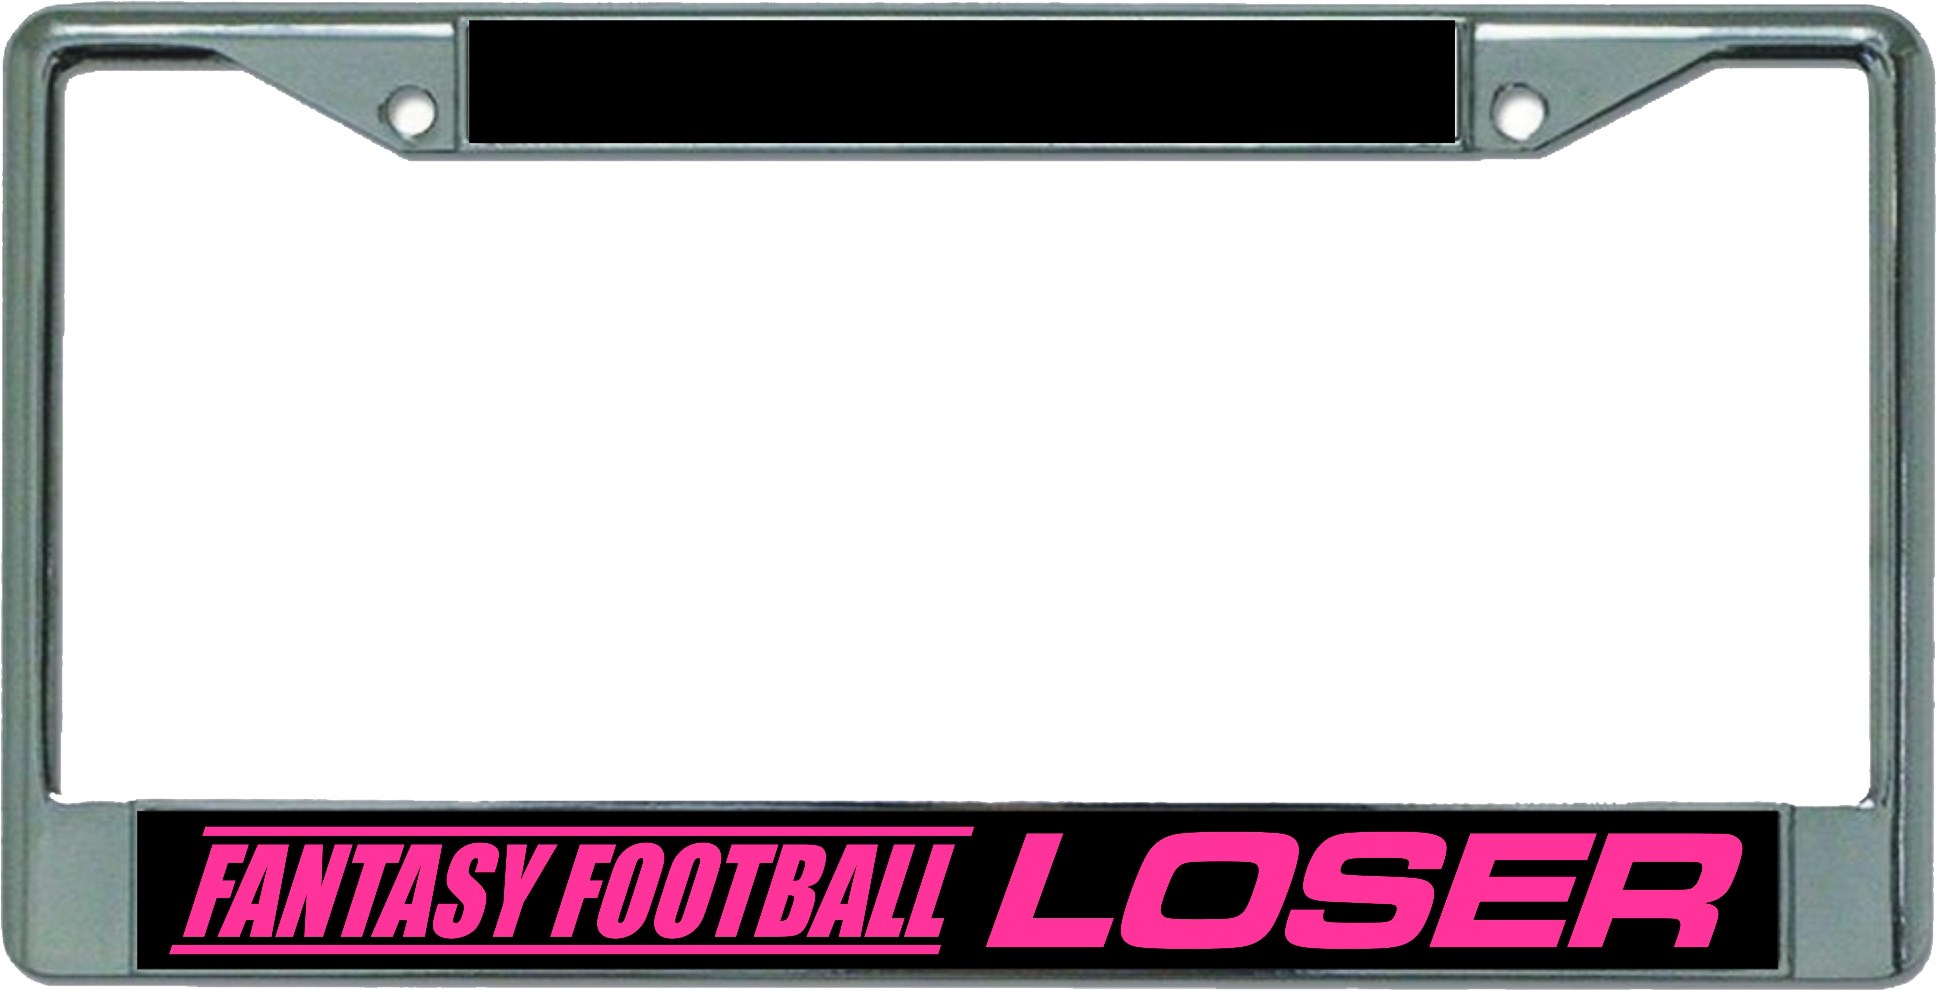 Fantasy FOOTBALL Loser Chrome License Plate Frame